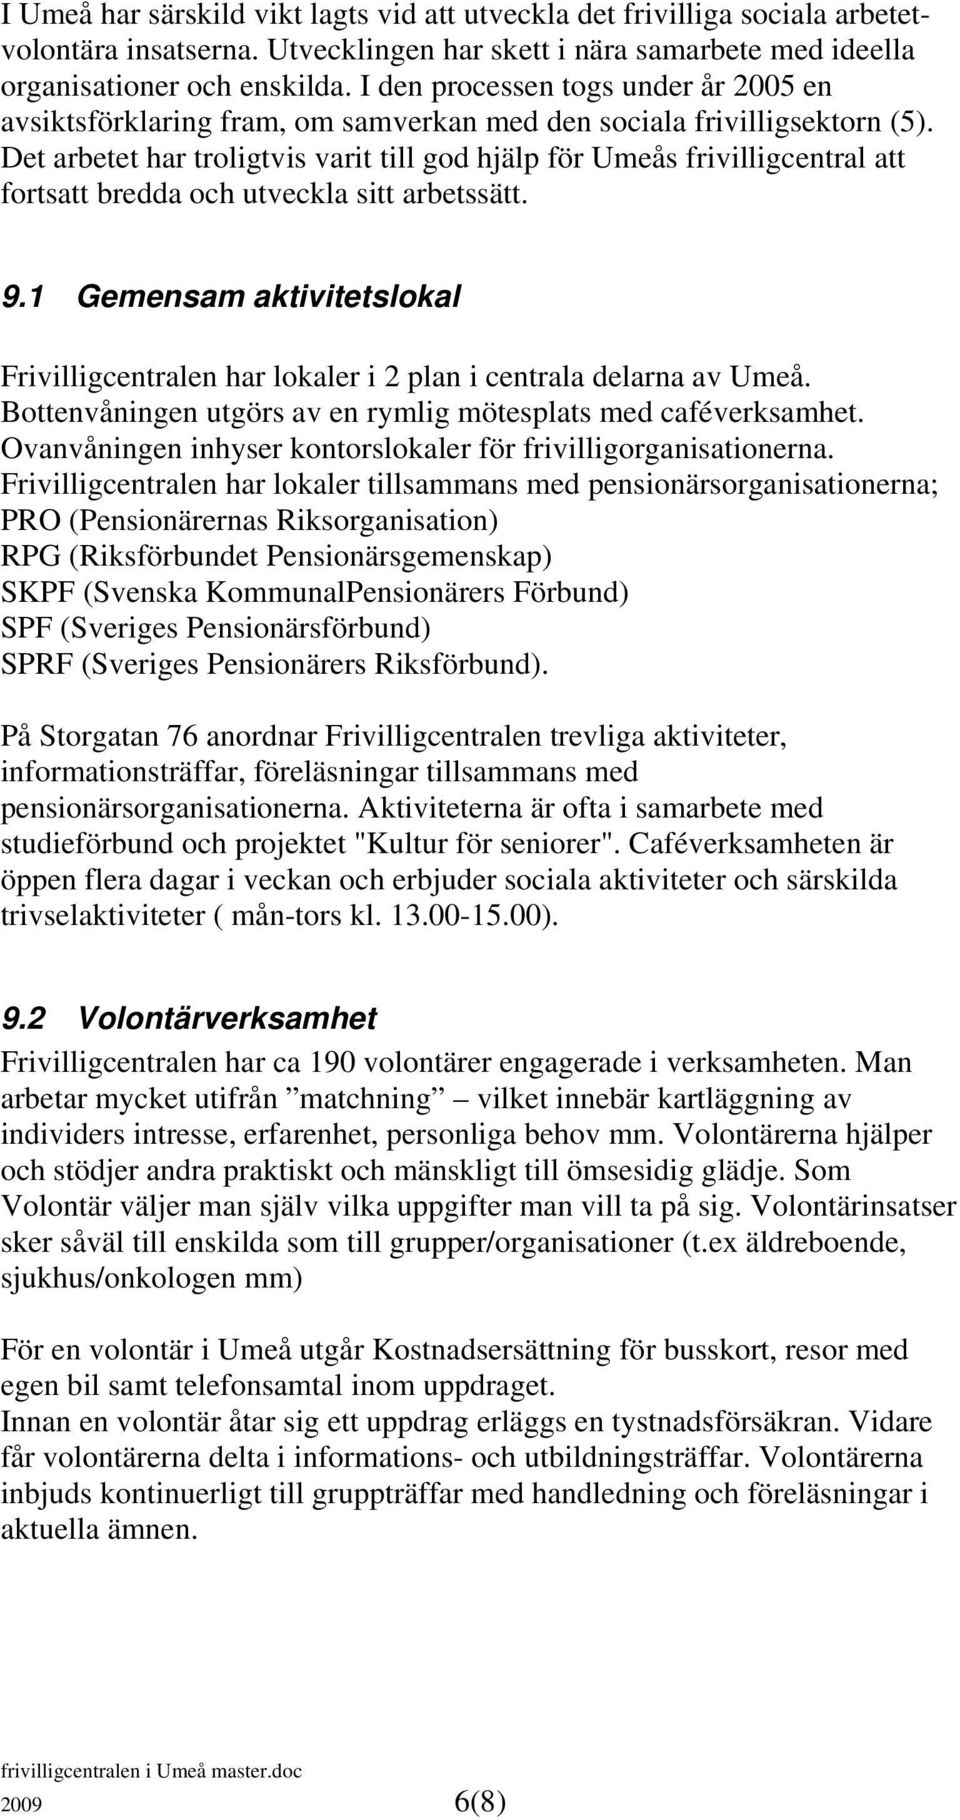 Det arbetet har troligtvis varit till god hjälp för Umeås frivilligcentral att fortsatt bredda och utveckla sitt arbetssätt. 9.